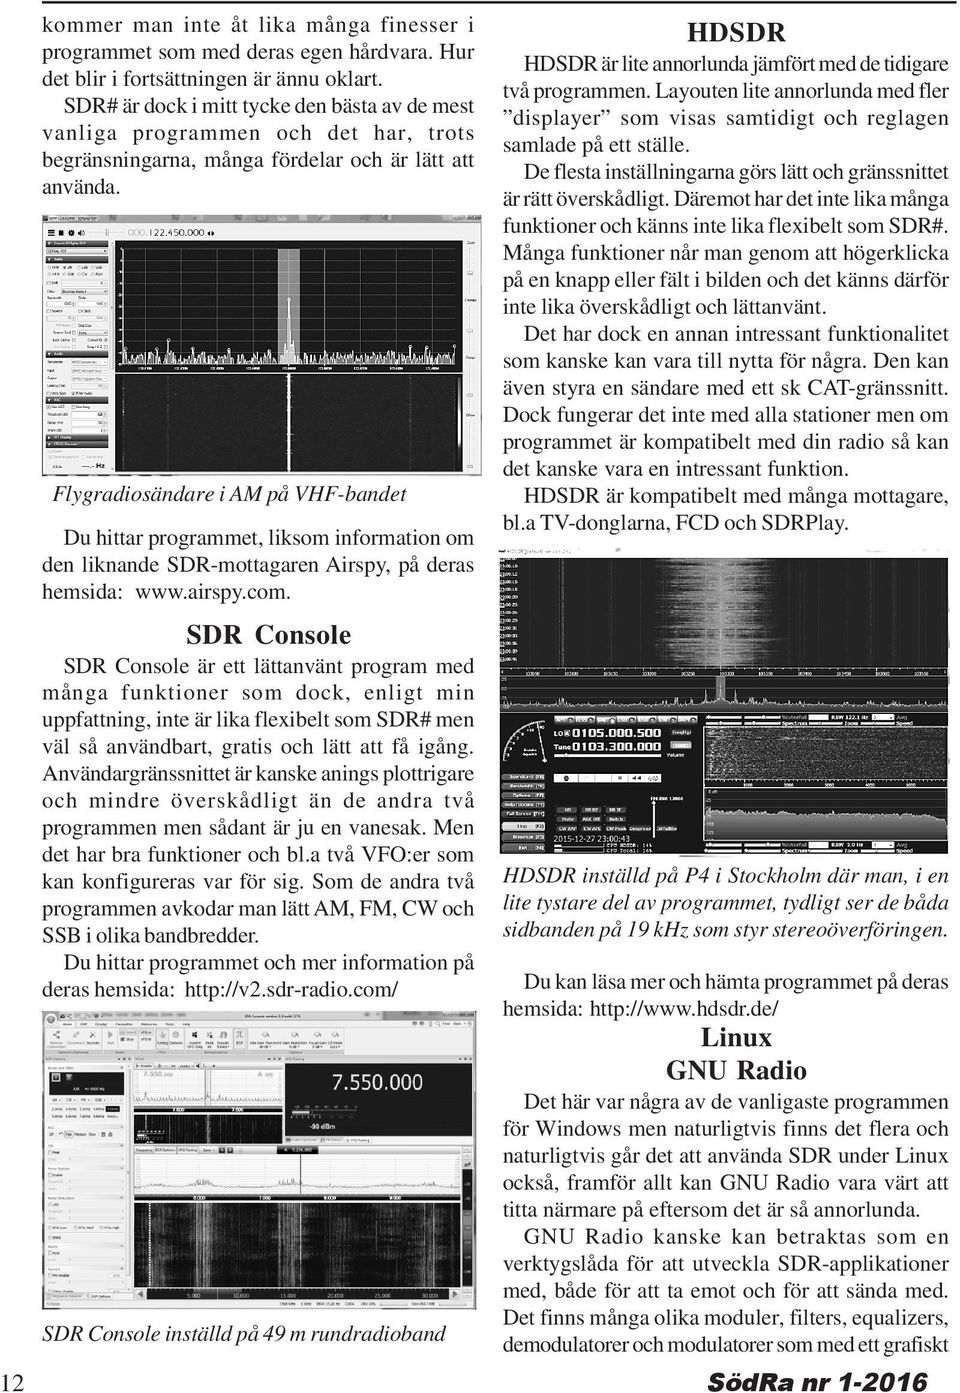 Flygradiosändare i AM på VHF-bandet Du hittar programmet, liksom information om den liknande SDR-mottagaren Airspy, på deras hemsida: www.airspy.com.